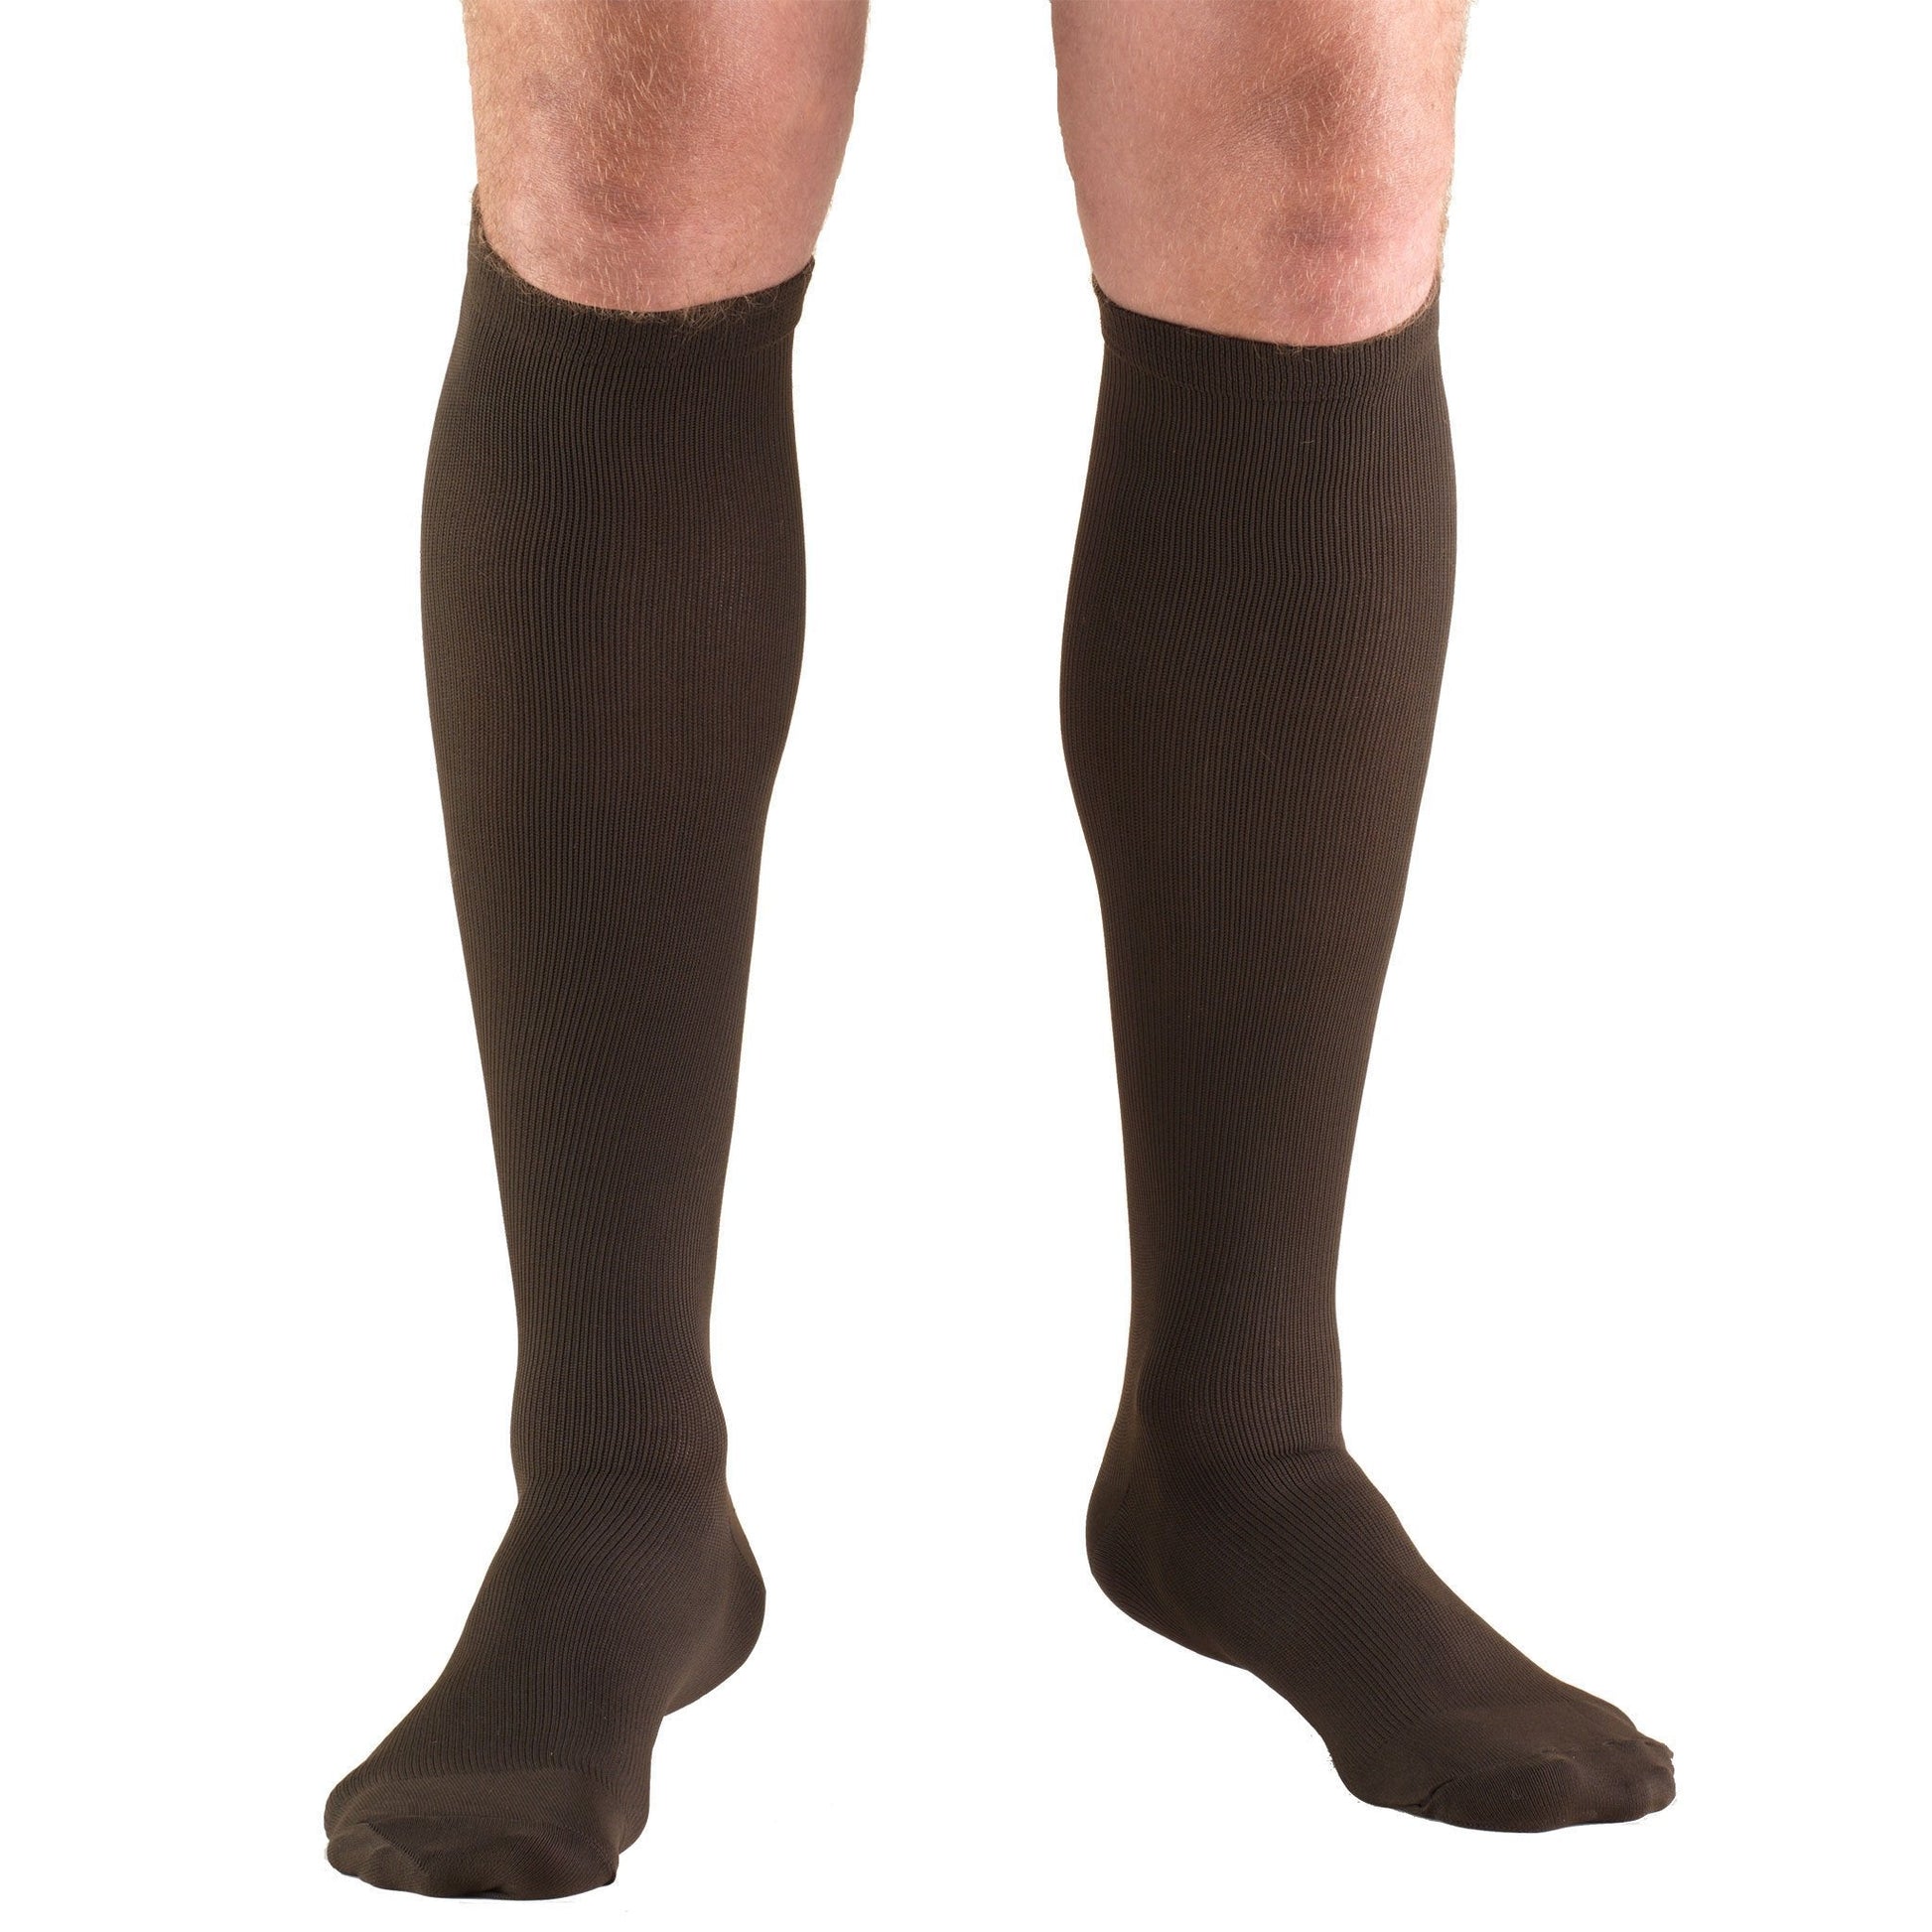 Truform Men's Dress 20-30 mmHg Knee High, Borwn